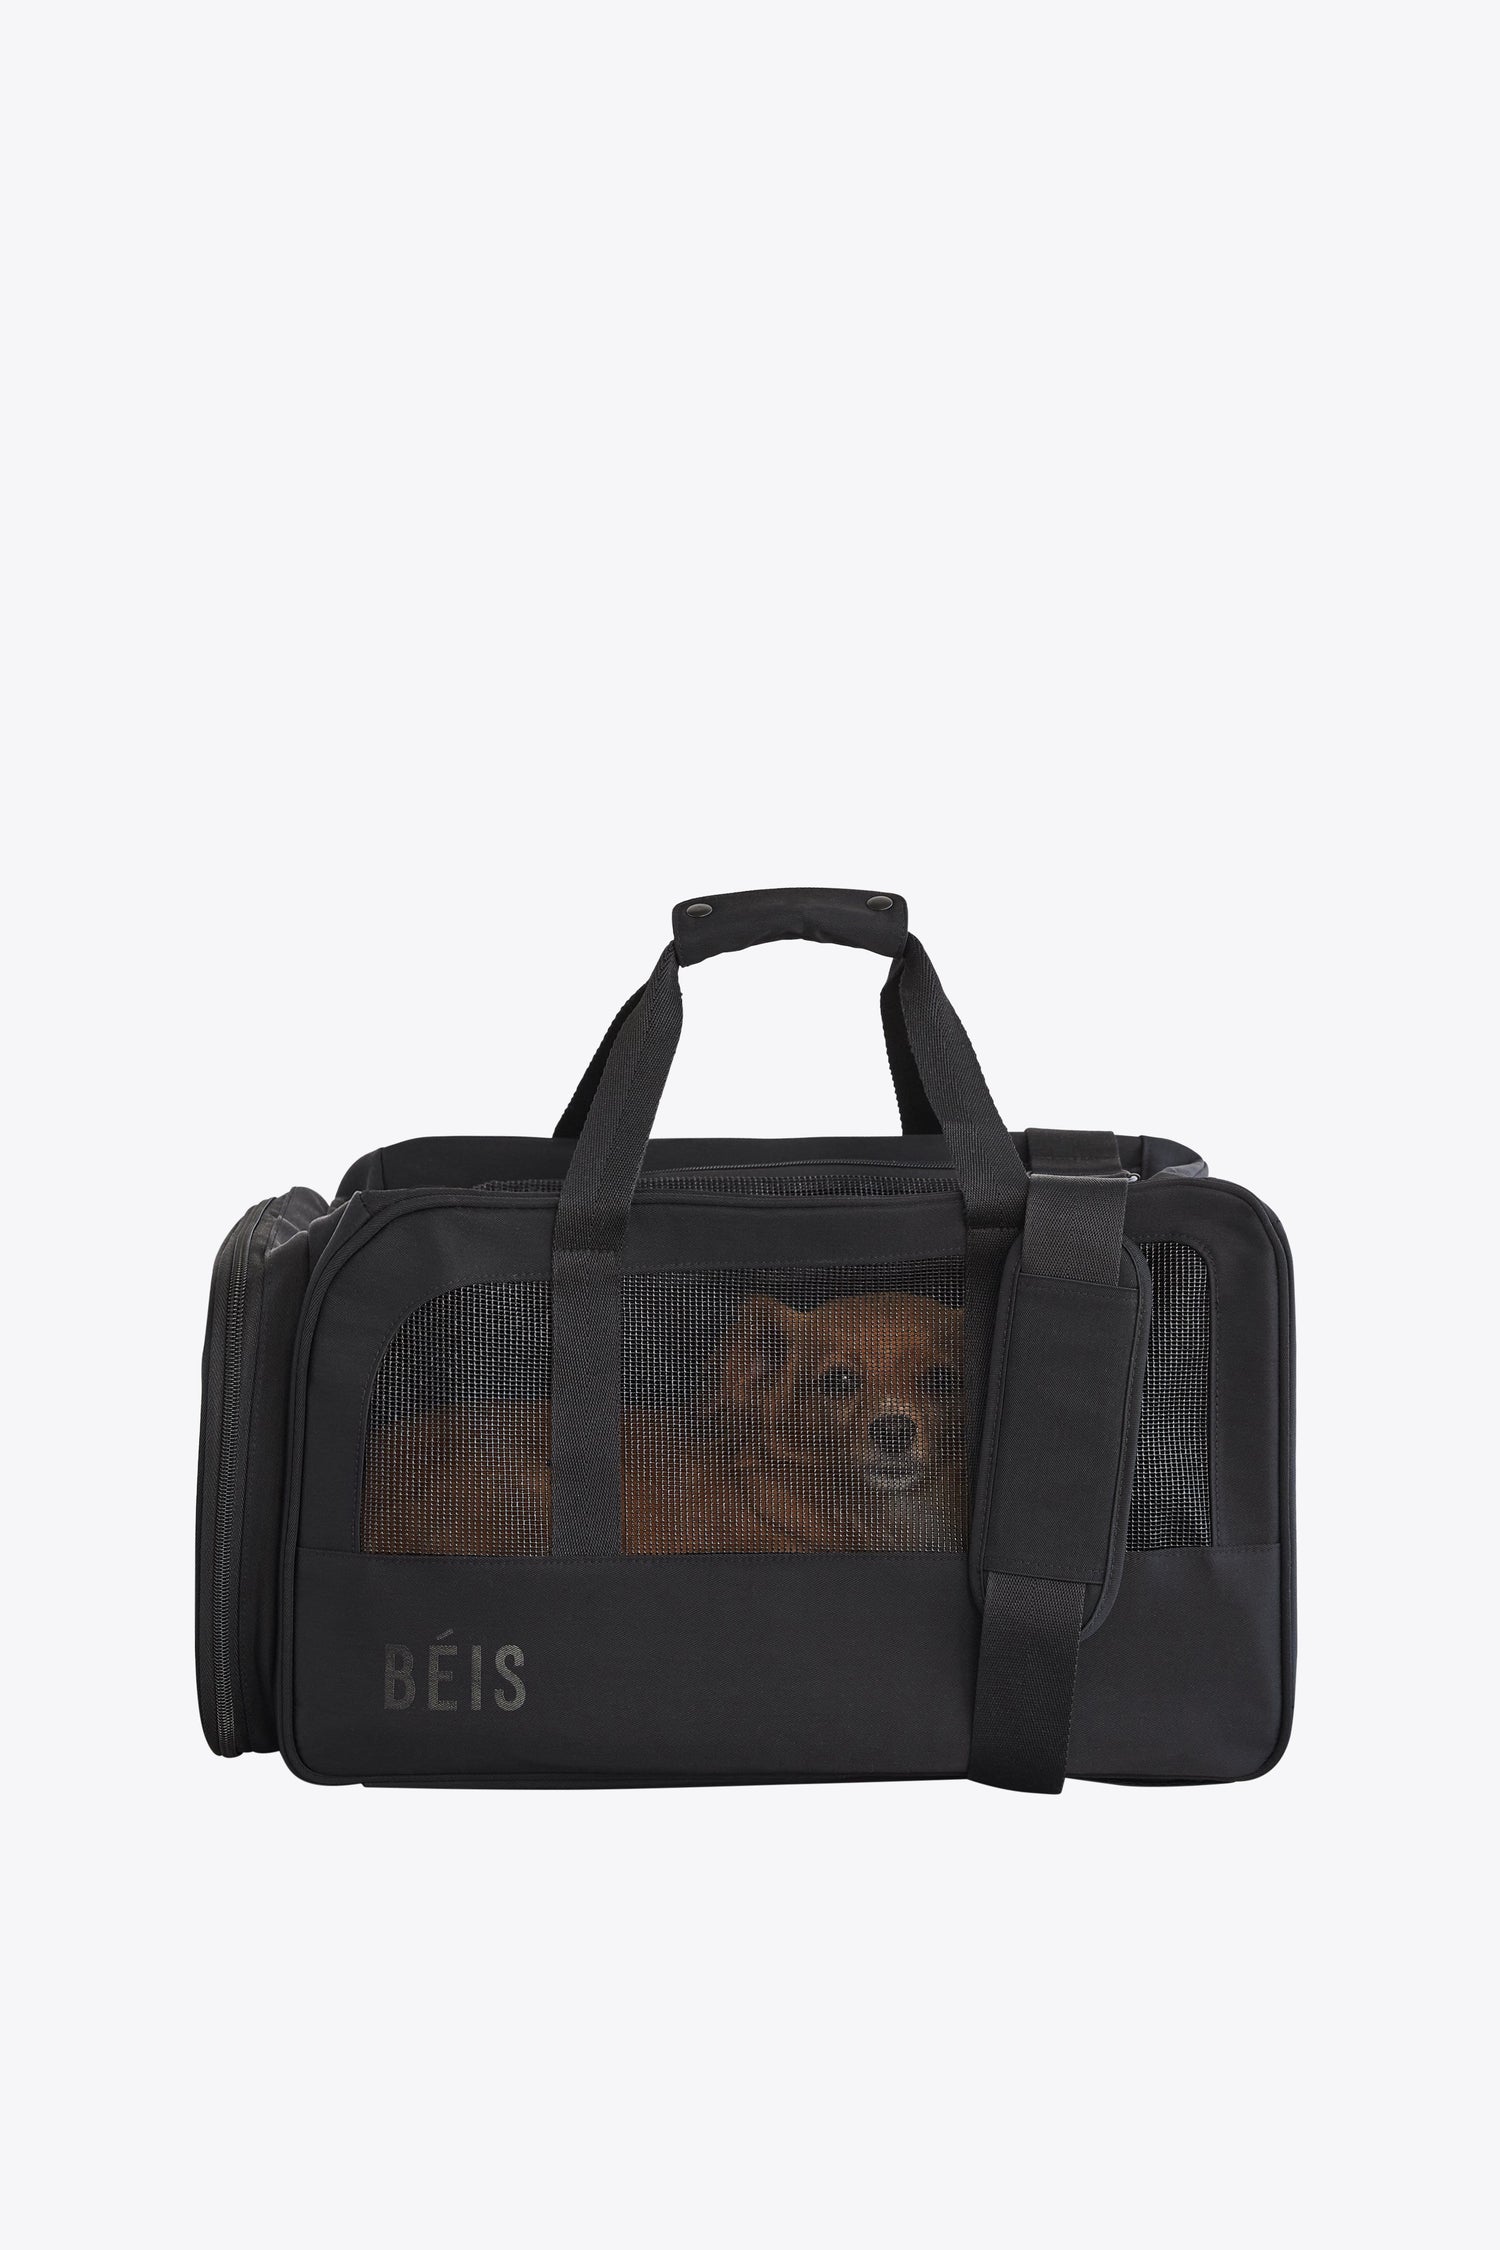 Pet Travel Bags